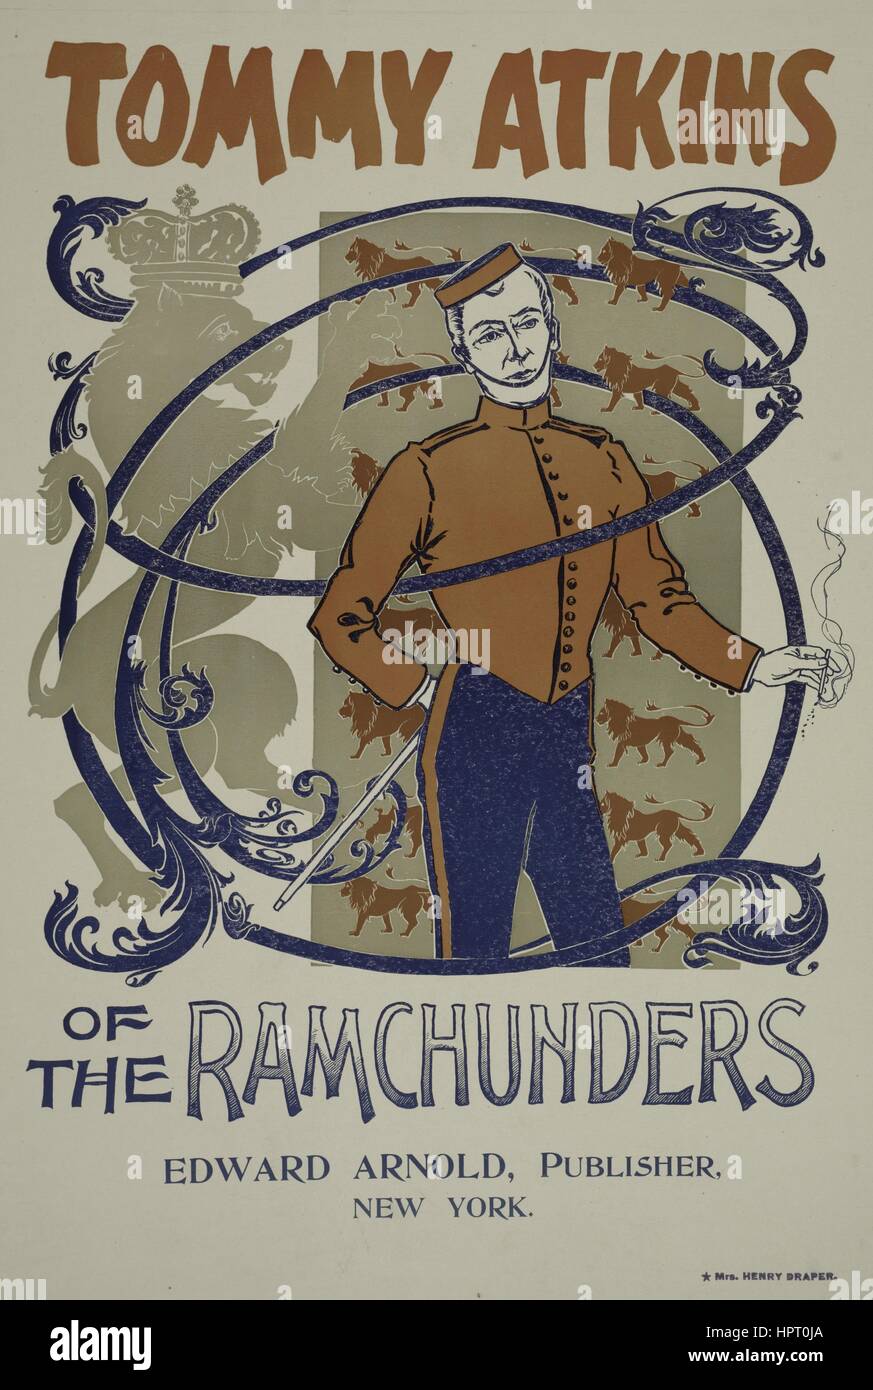 Poster pubblicitario per un libro intitolato Tommy Atkins del Ramchunders da Edward Arnold che mostra un uomo in una sorta di uniforme, 1903. Dalla Biblioteca Pubblica di New York. Foto Stock